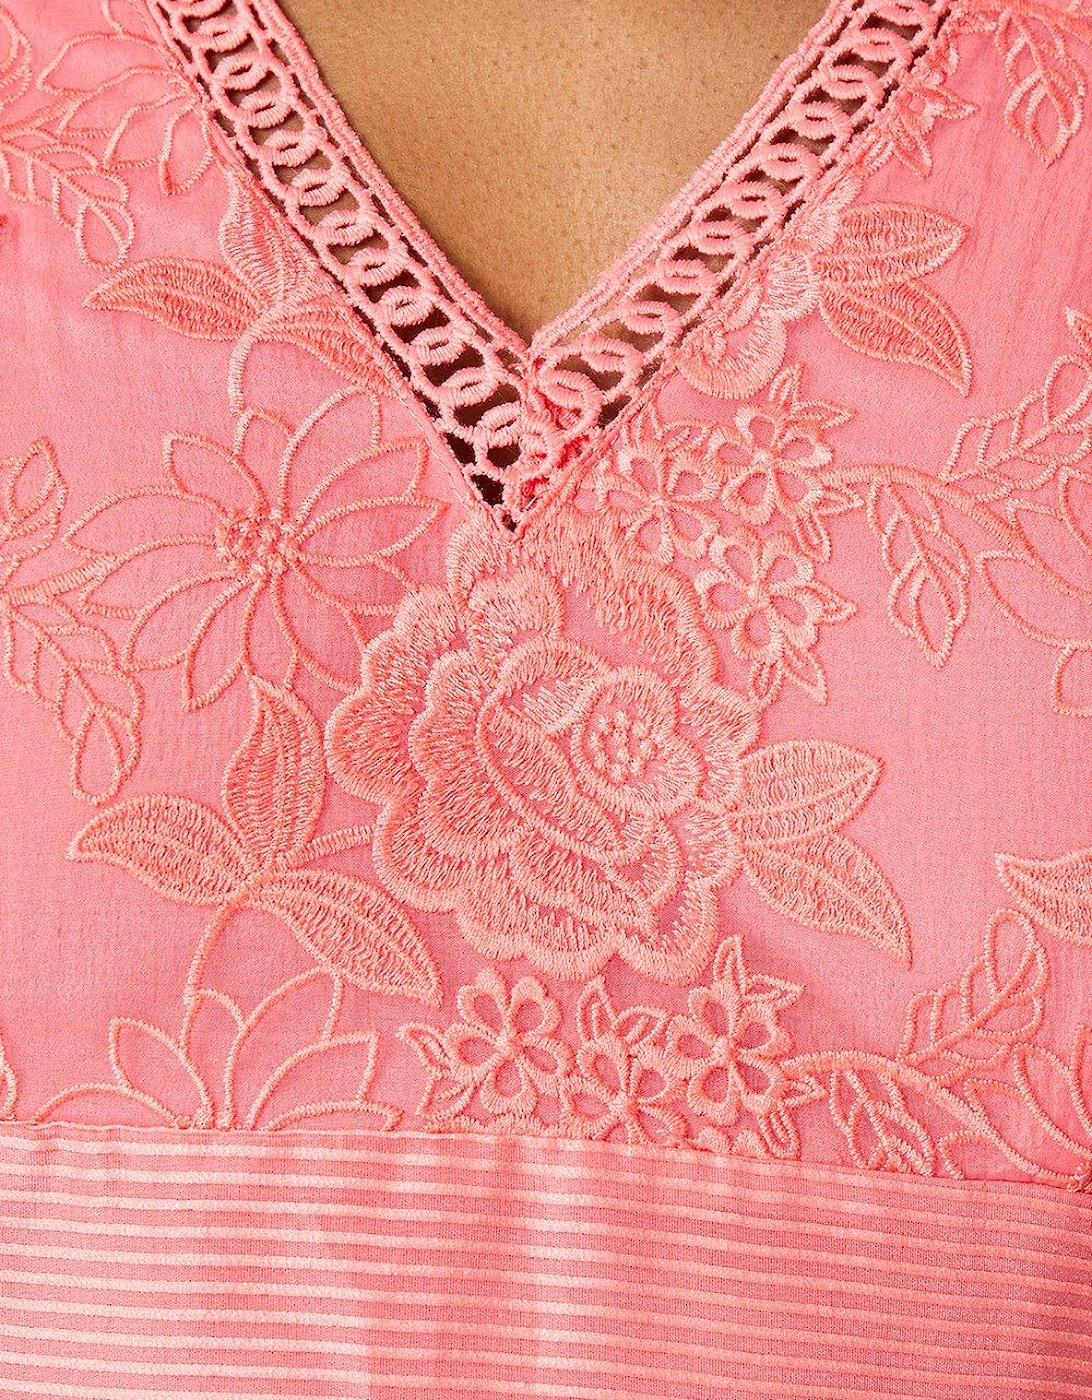 Lace Organza Panelled Midi Dress